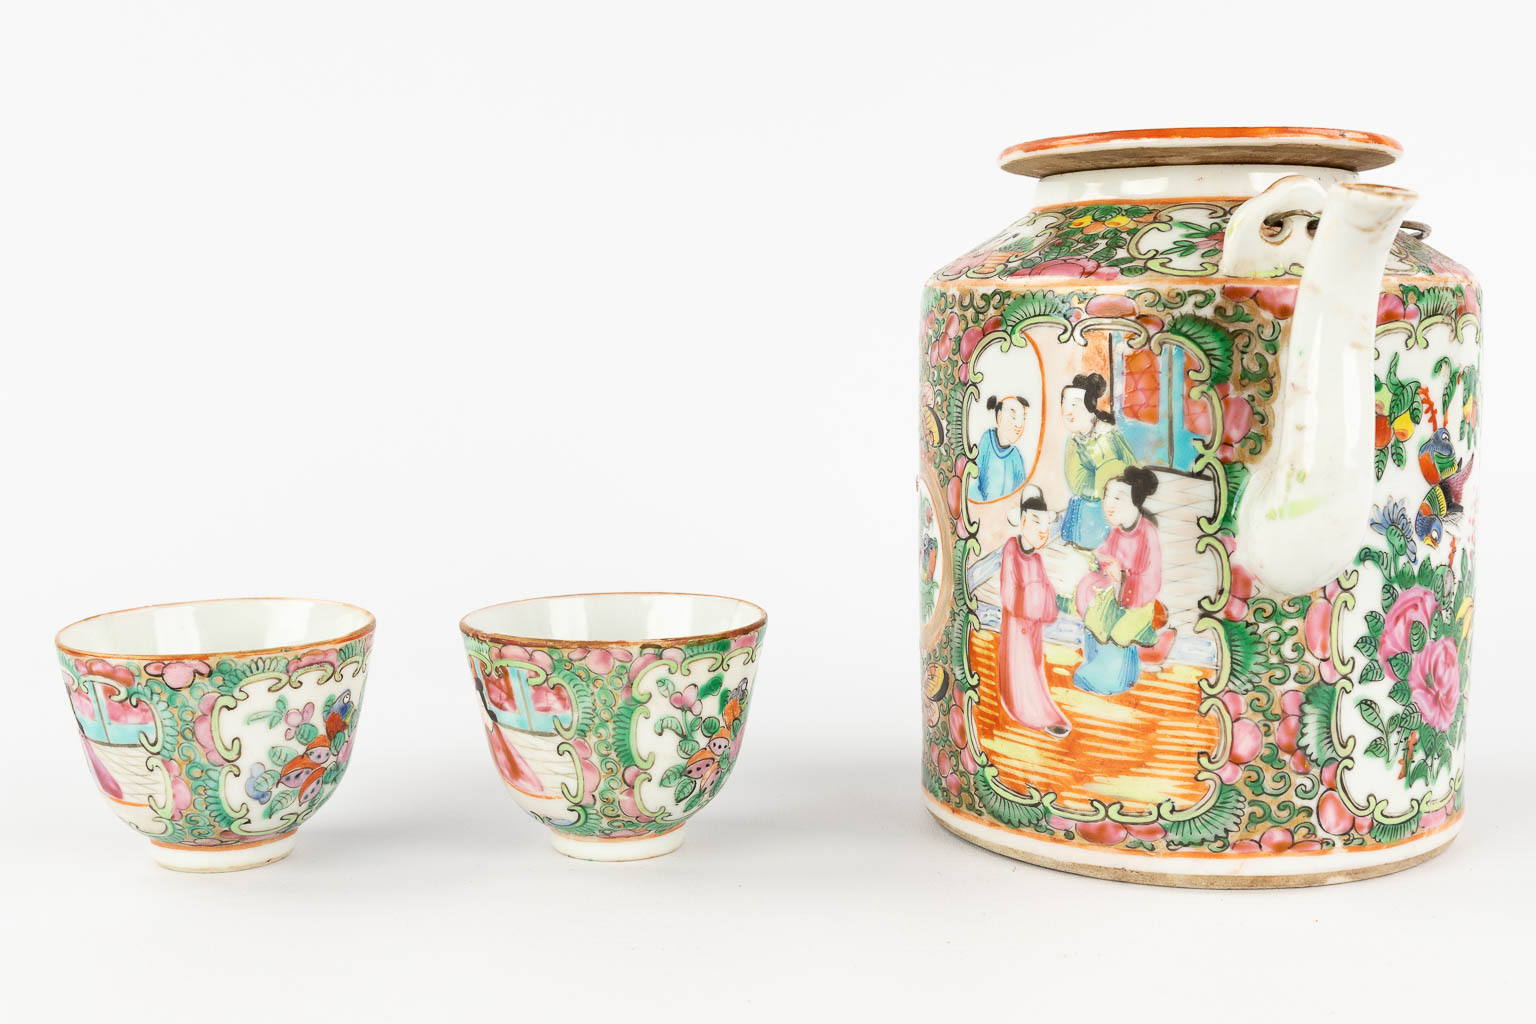 Een collectie van 6 stuks Chinees Kanton porselein, met een theekan, 3 borden en een schaal. 19de/20ste eeuw. (L: 12,5 x W: 18 x